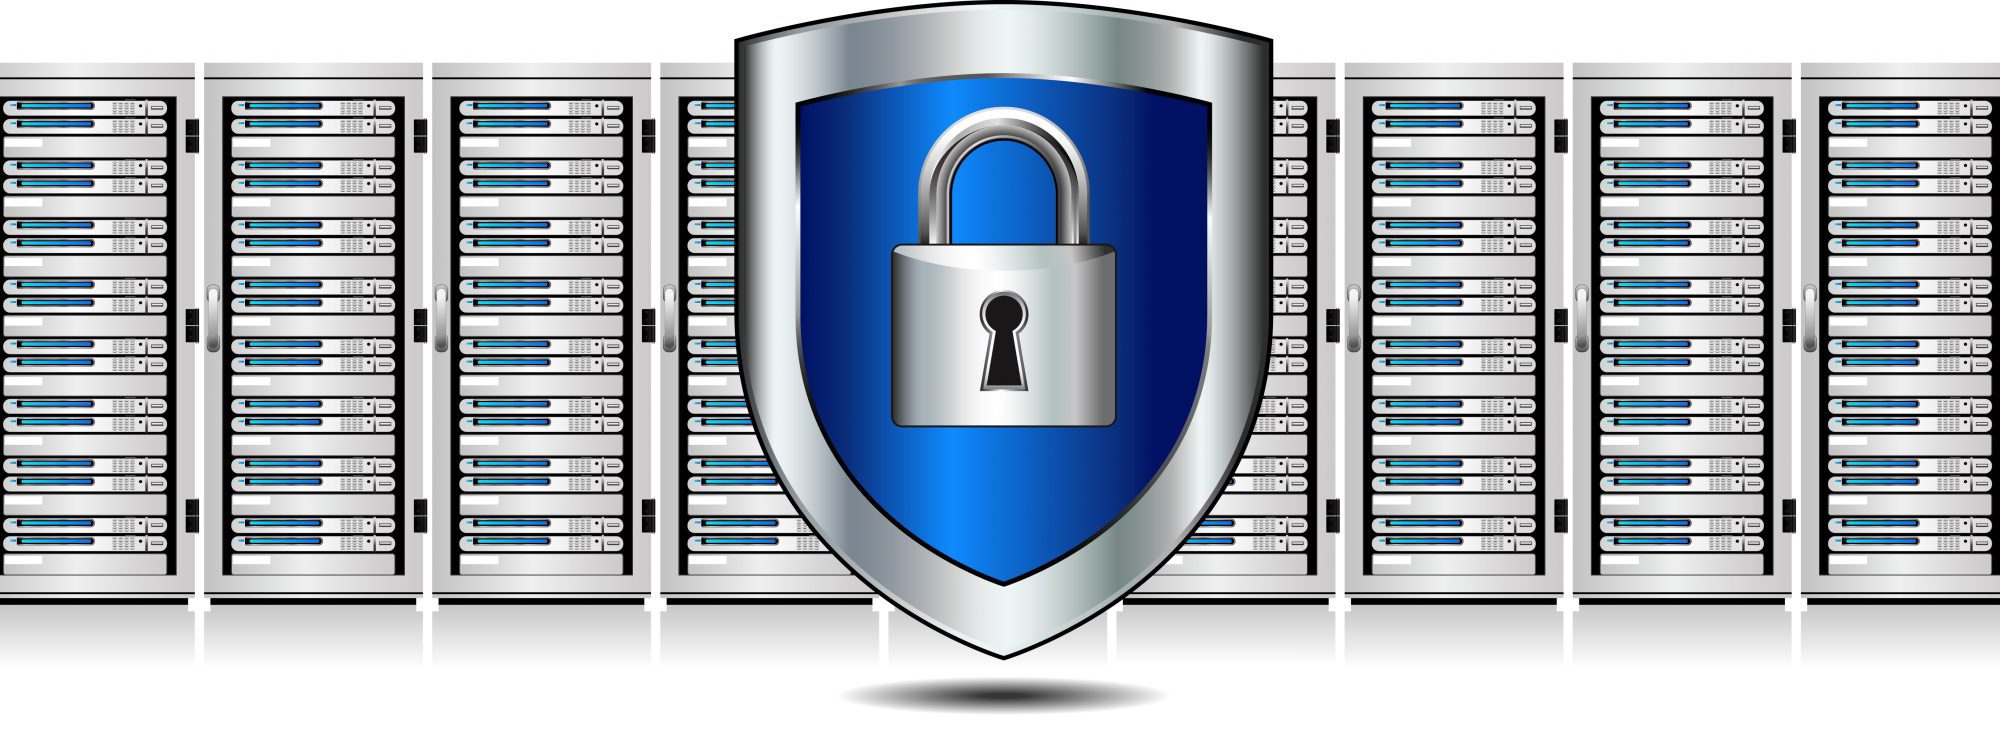 Datacenter-Security-Shutterstock-2000x744